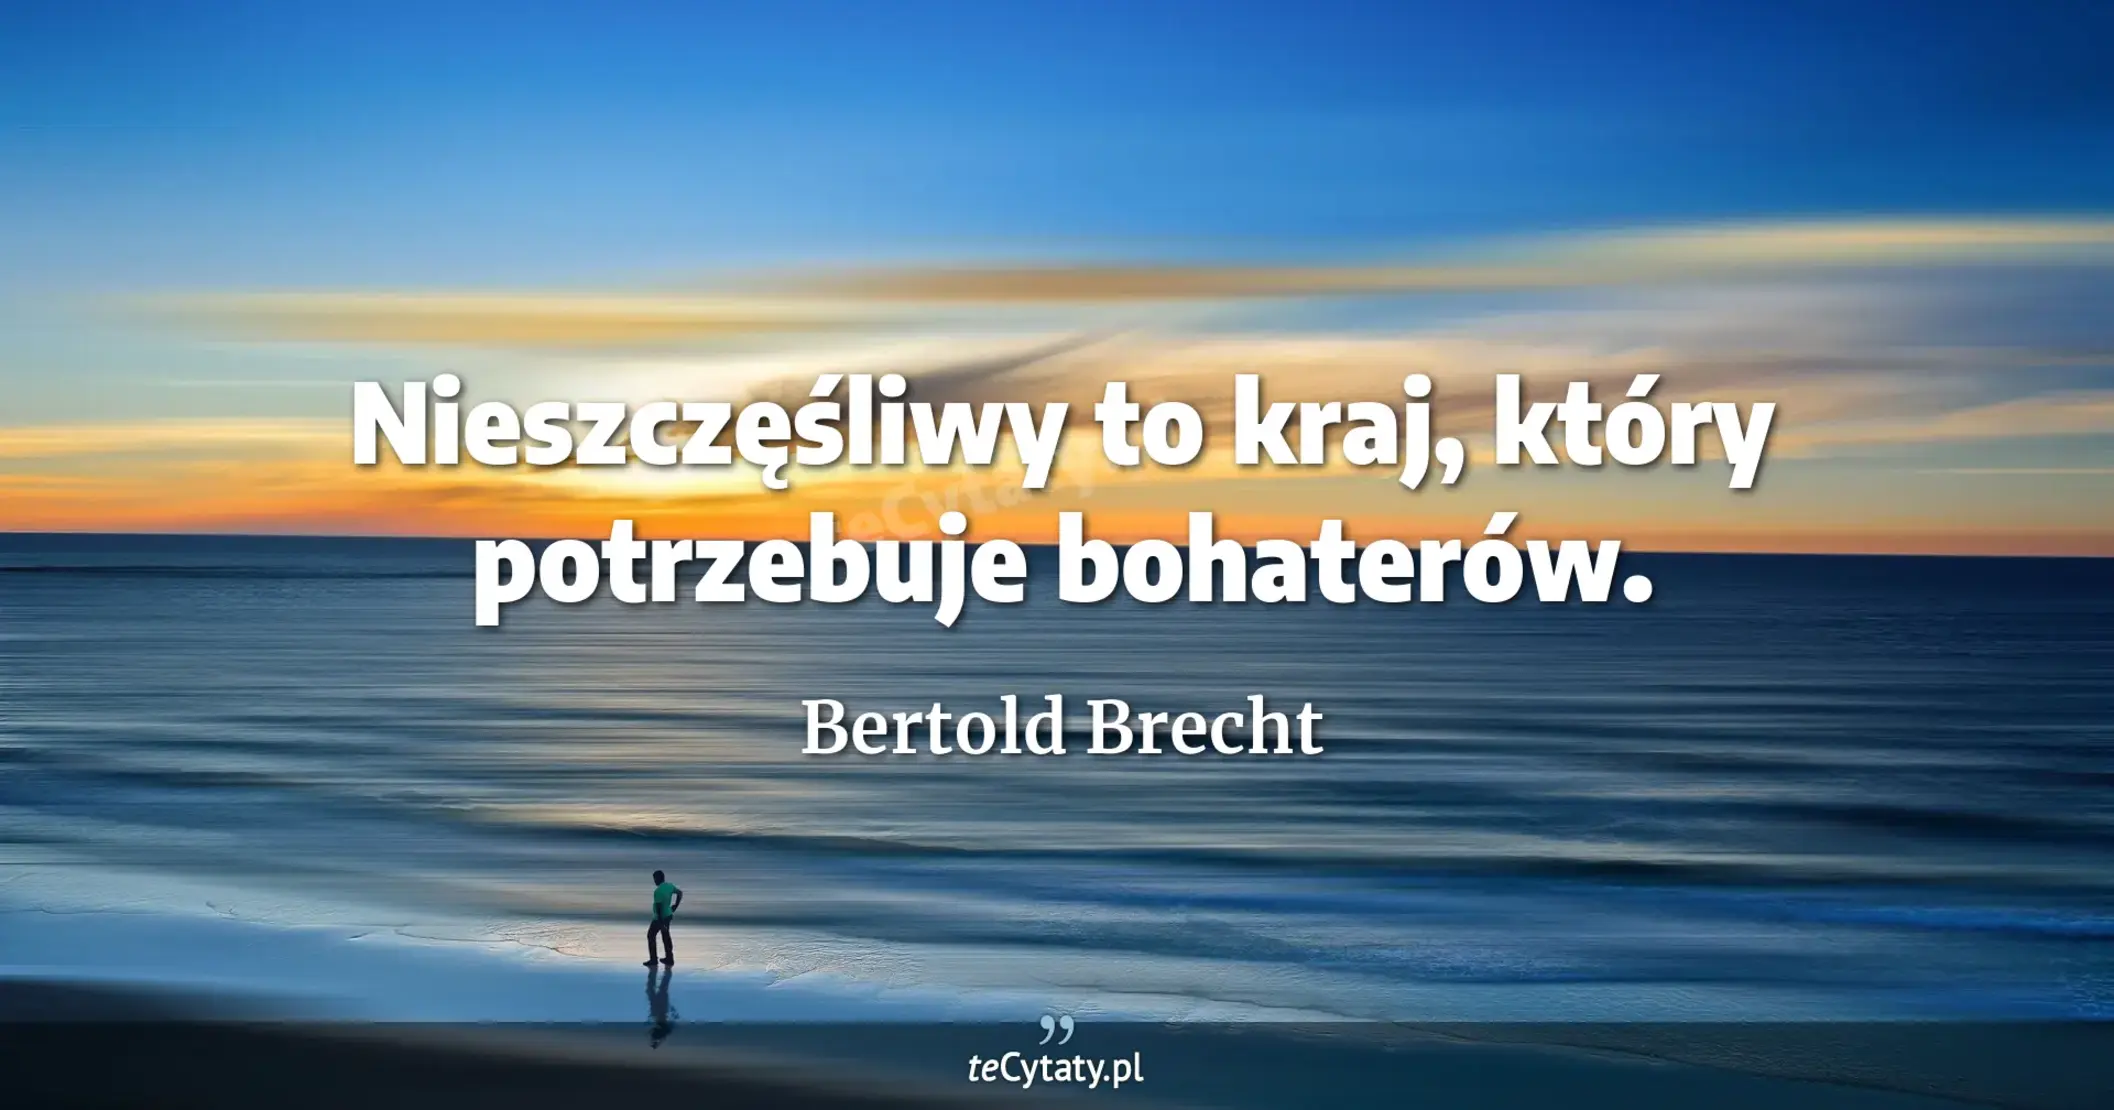 Nieszczęśliwy to kraj, który potrzebuje bohaterów. - Bertold Brecht